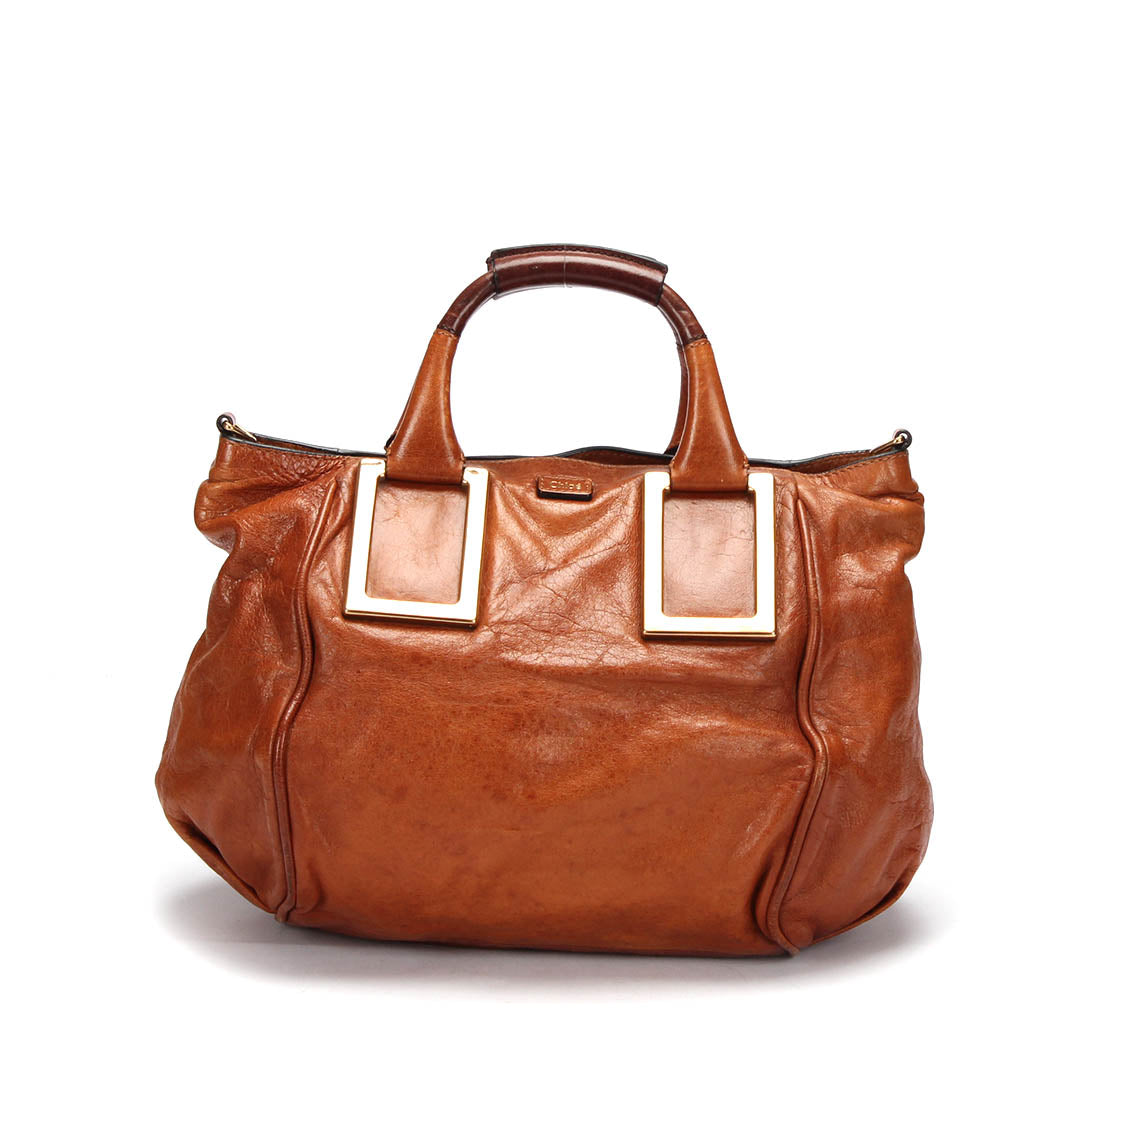 Chloe Ethel Leather Shoulder Bag Leather Shoulder Bag in Fair condition